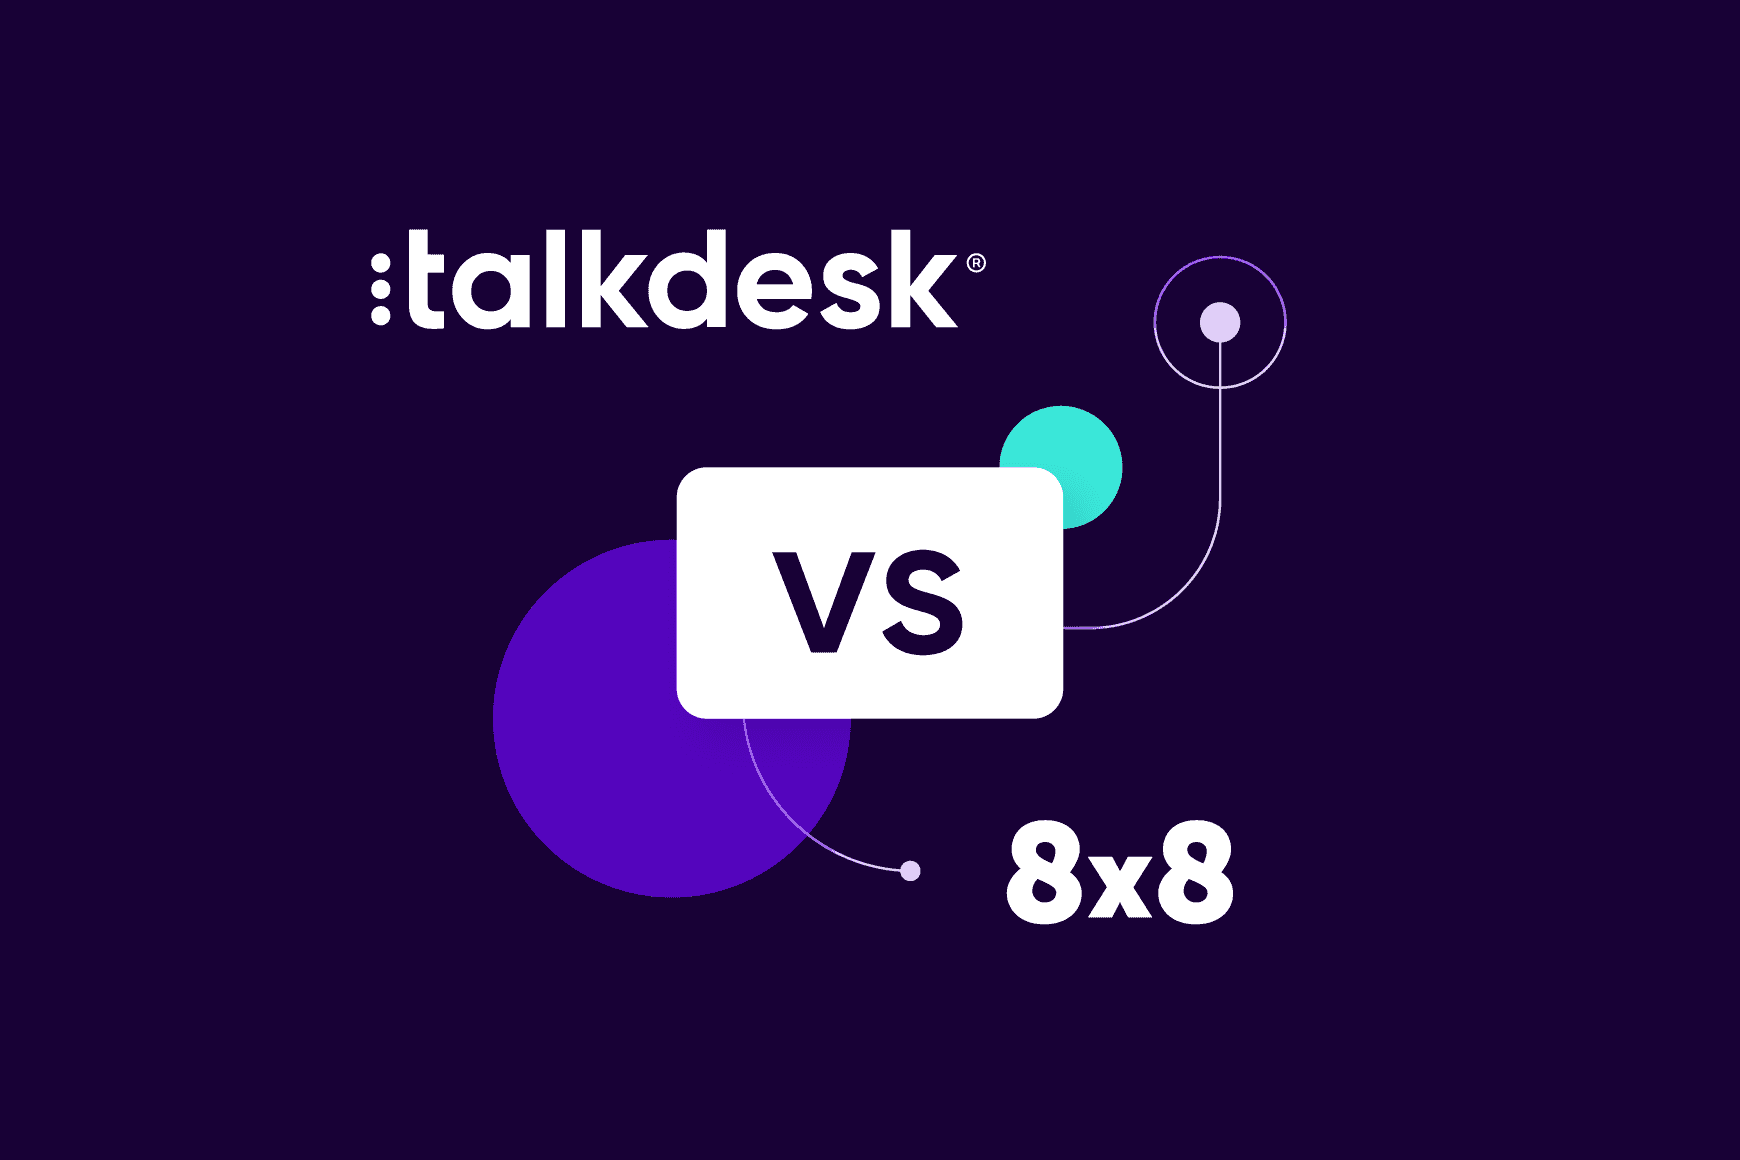 Talkdesk vs. 8x8